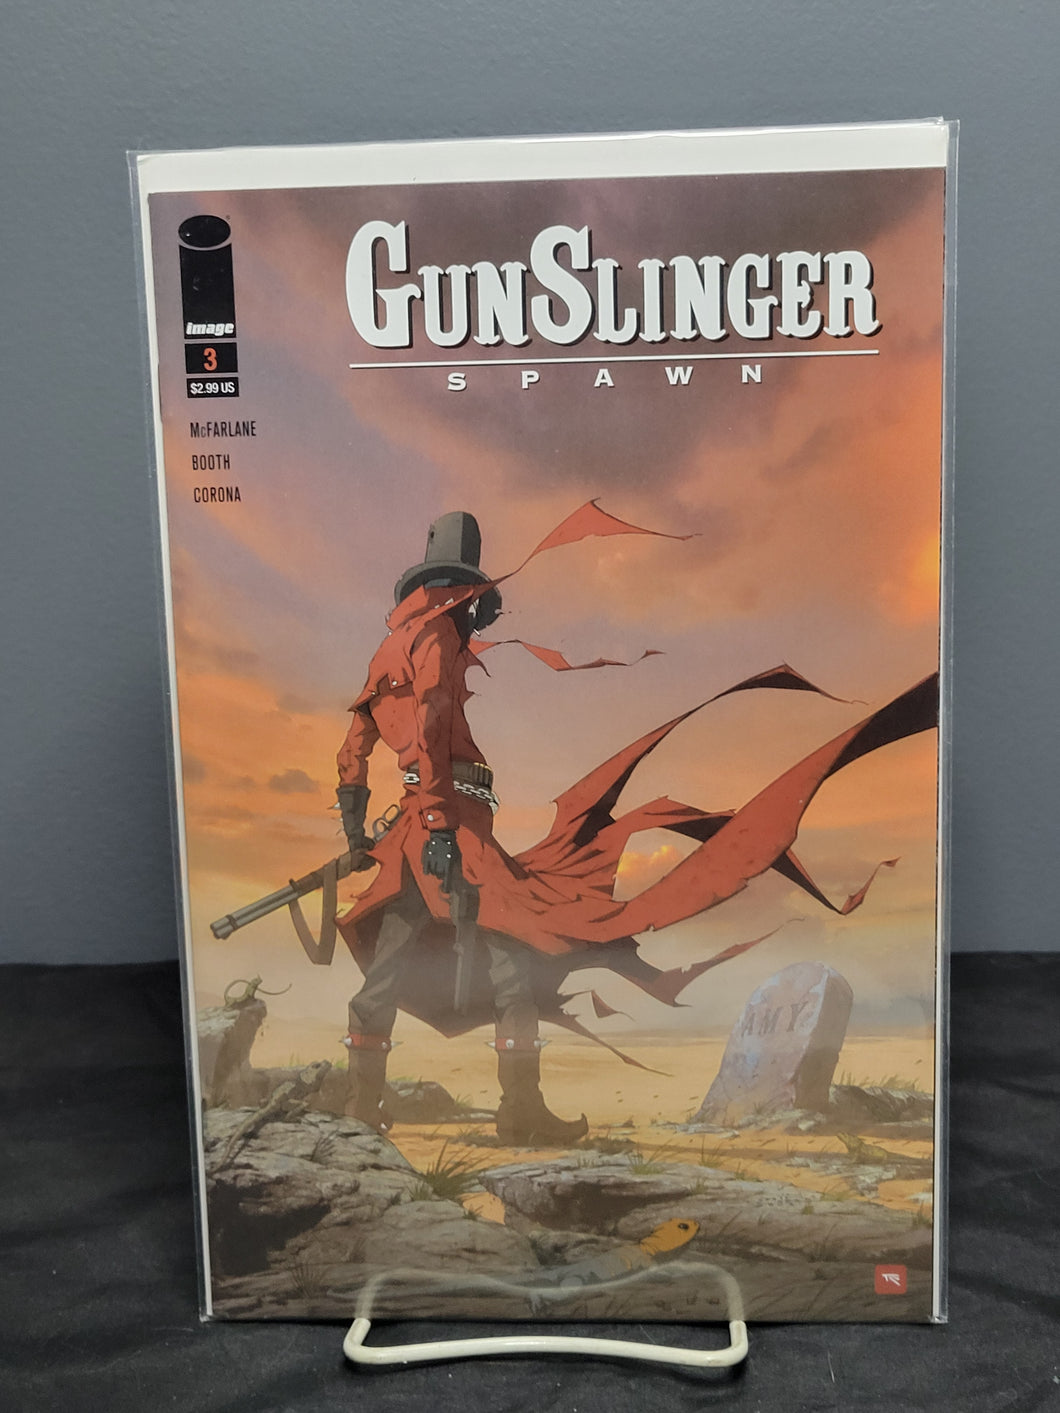 Gunslinger Spawn #3